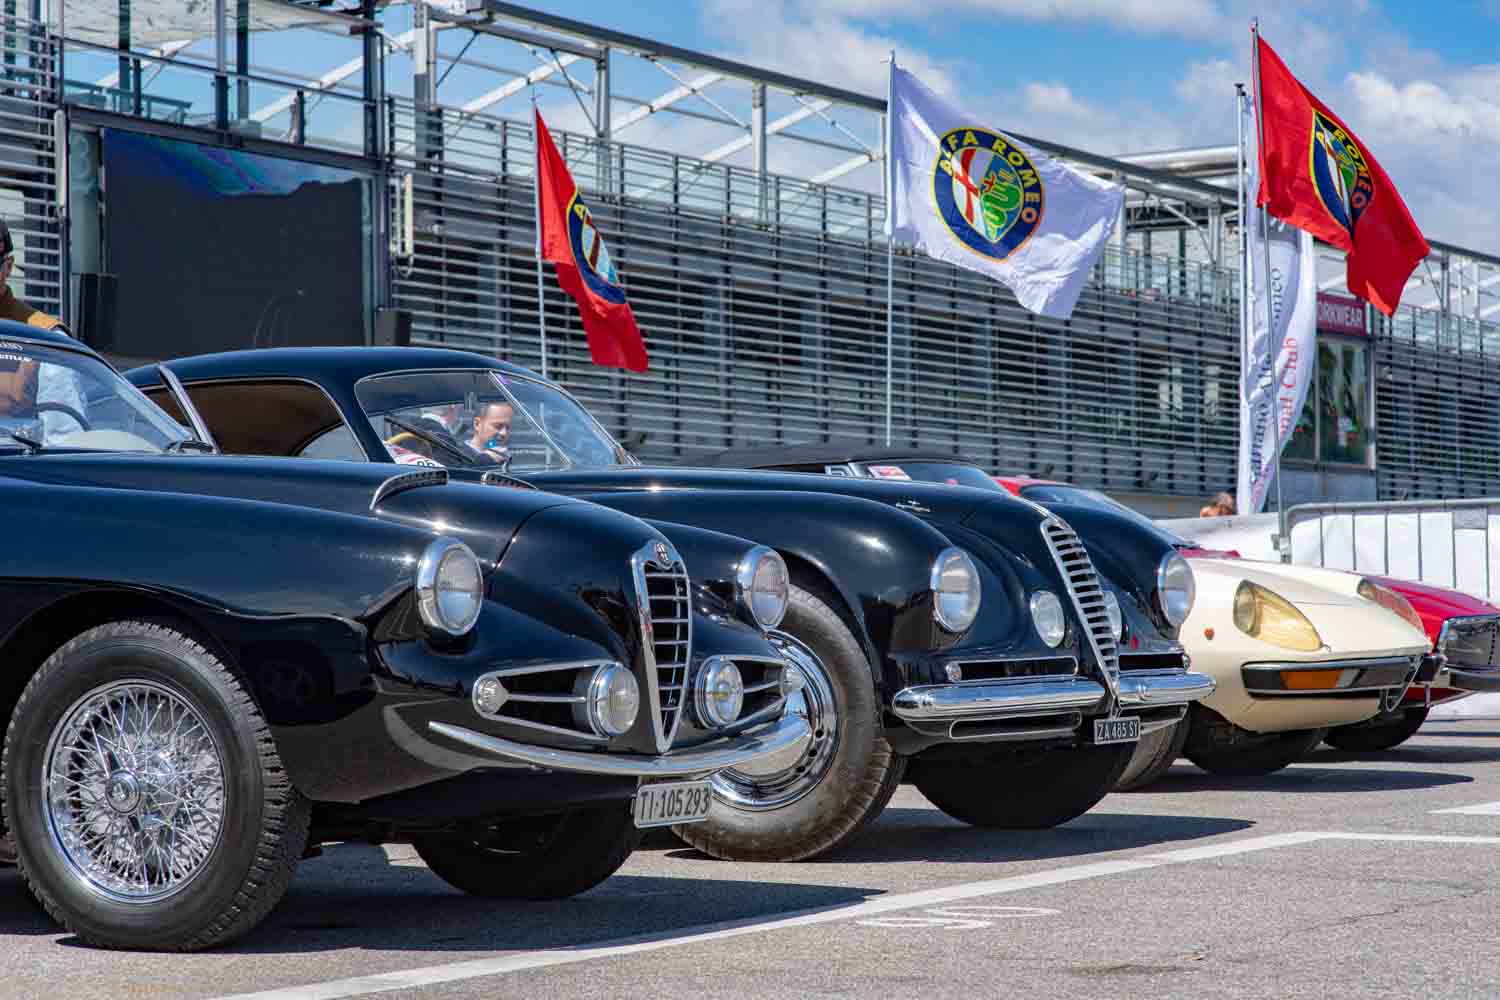 Alfa Romeo realizza a Monza il più grande raduno di vetture del Biscione provenienti da tutta Europa e appartenenti a club e privati.